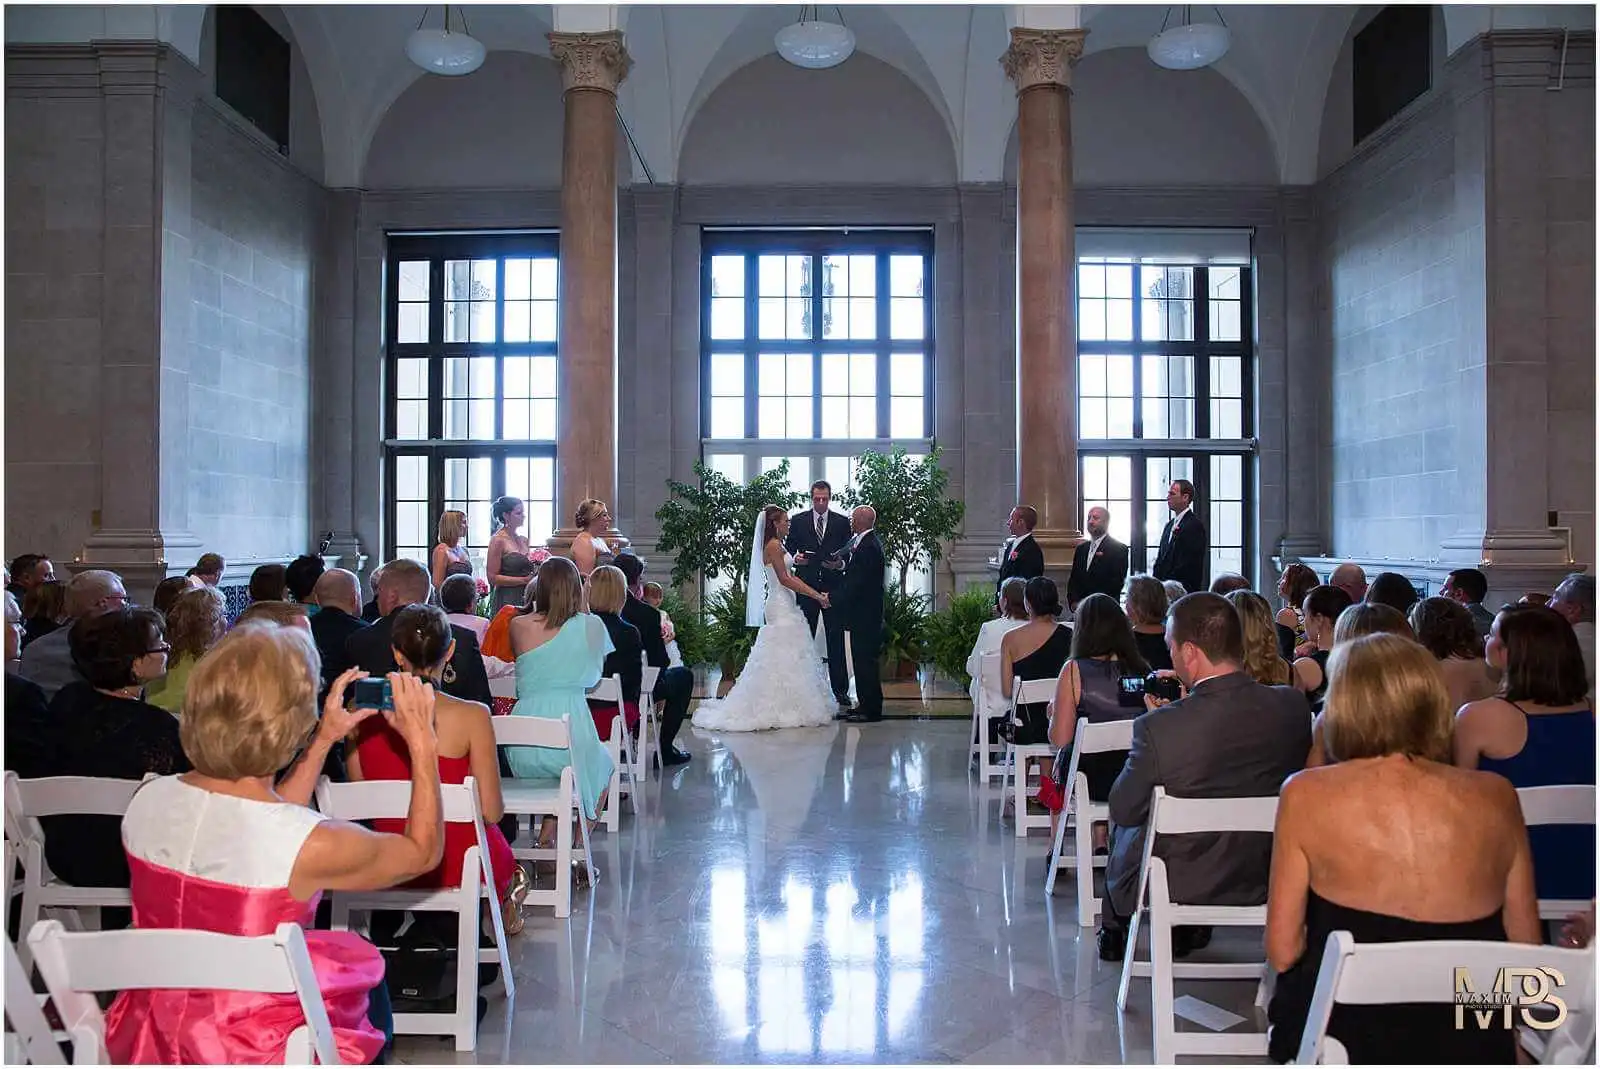 Dayton Art Institute Wedding ceremony